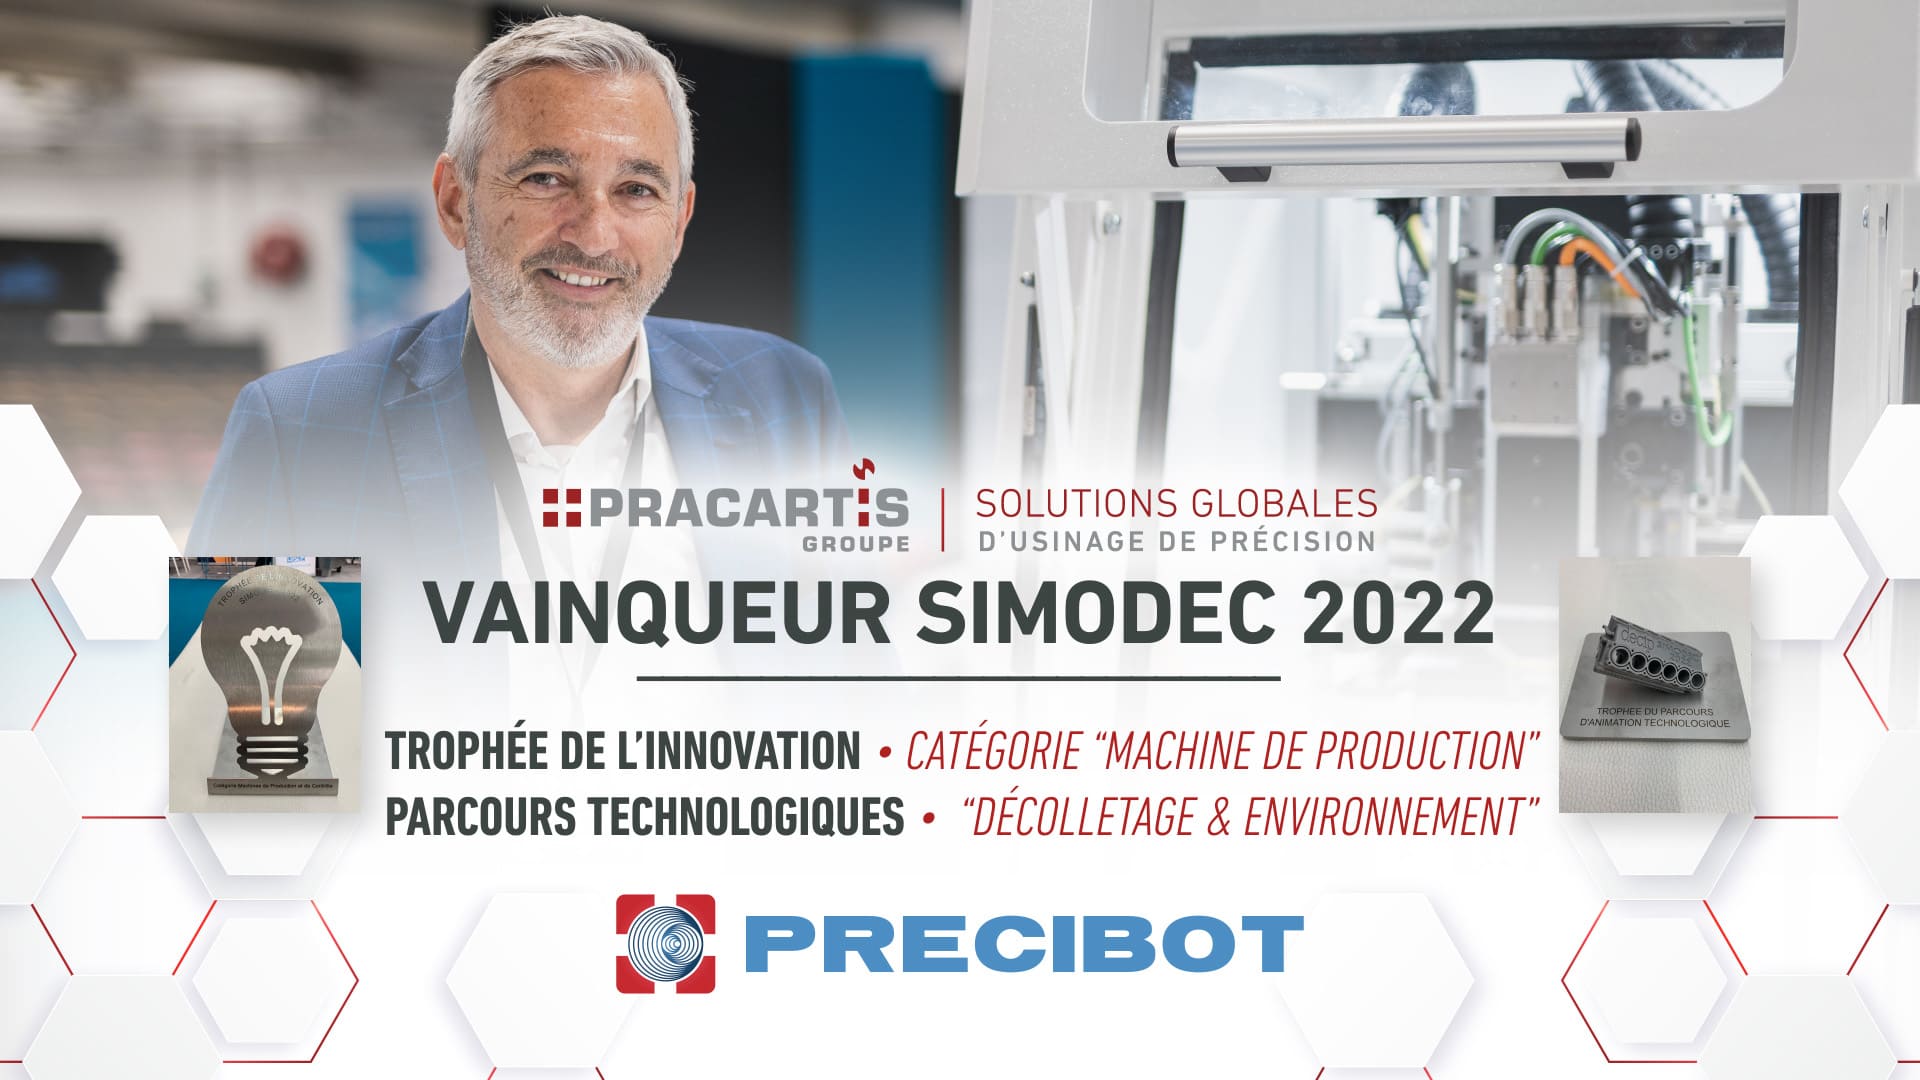 PRECISE FRANCE - Vainqueur trophée innovation SIMODEC 2022